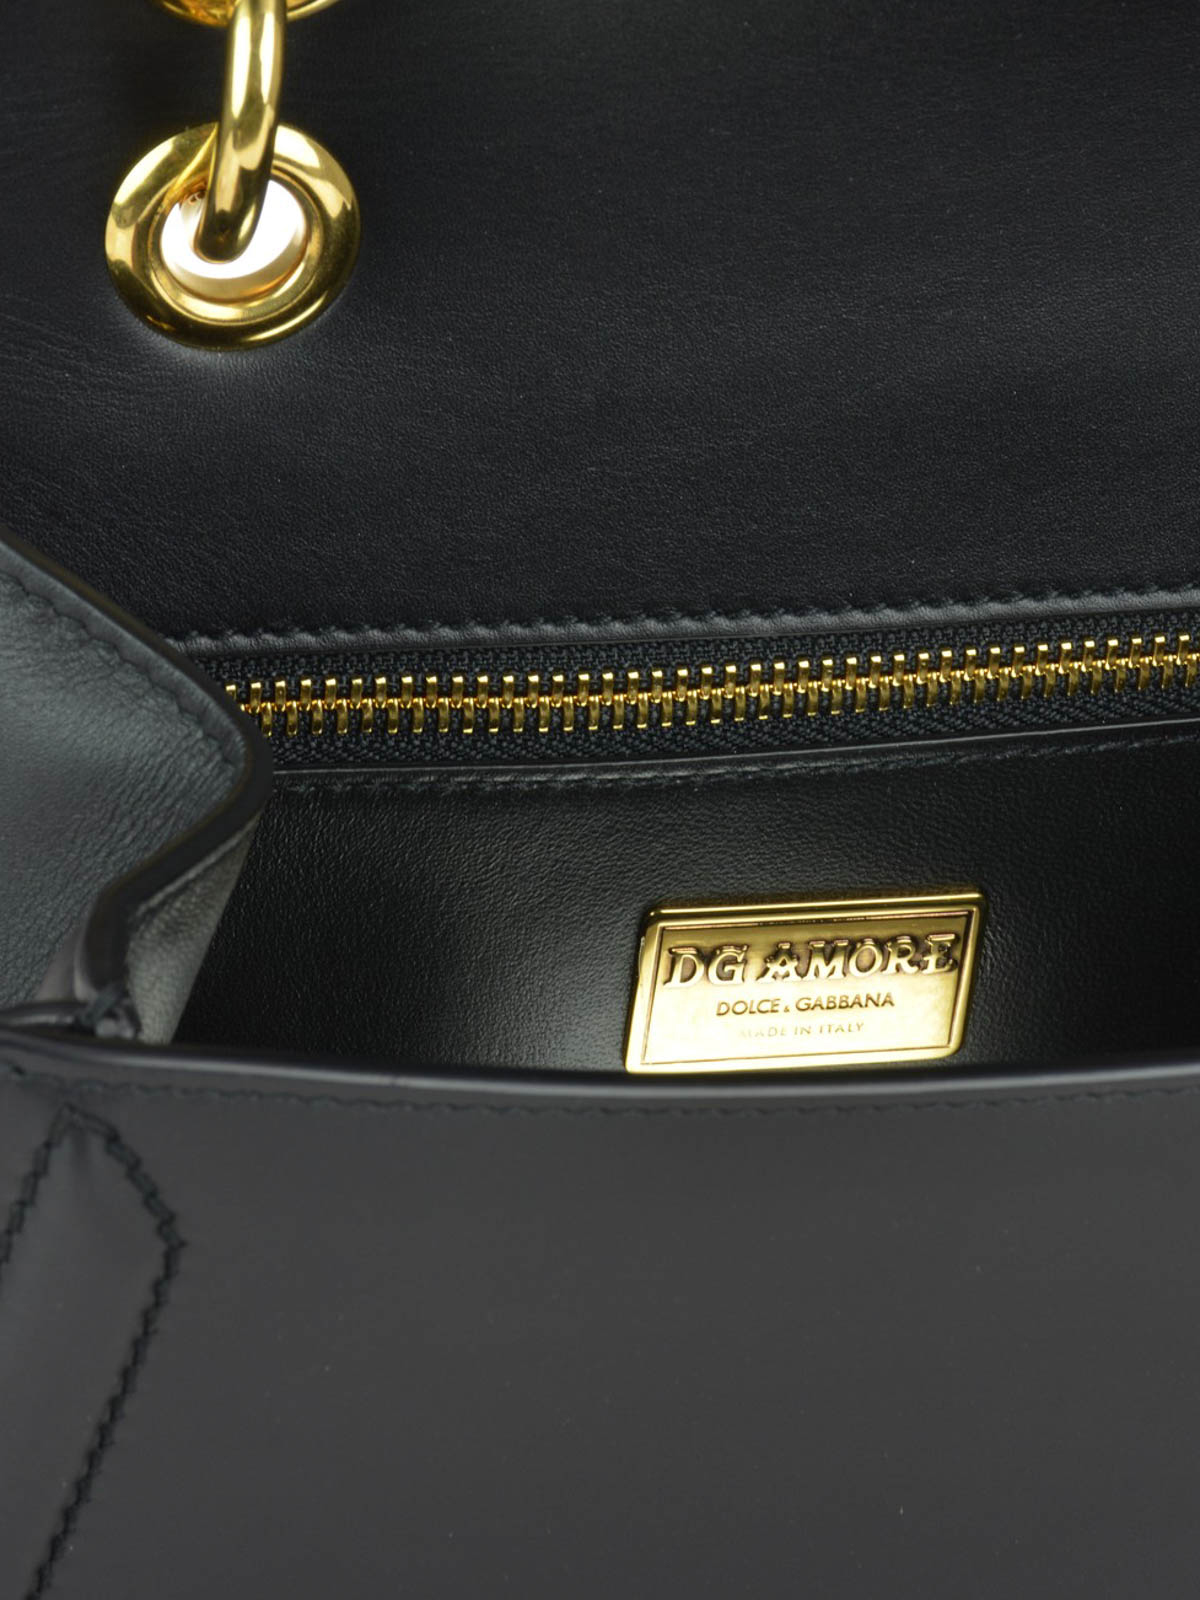 Dolce & Gabbana - DG Amore black leather shoulder bag - shoulder bags ...